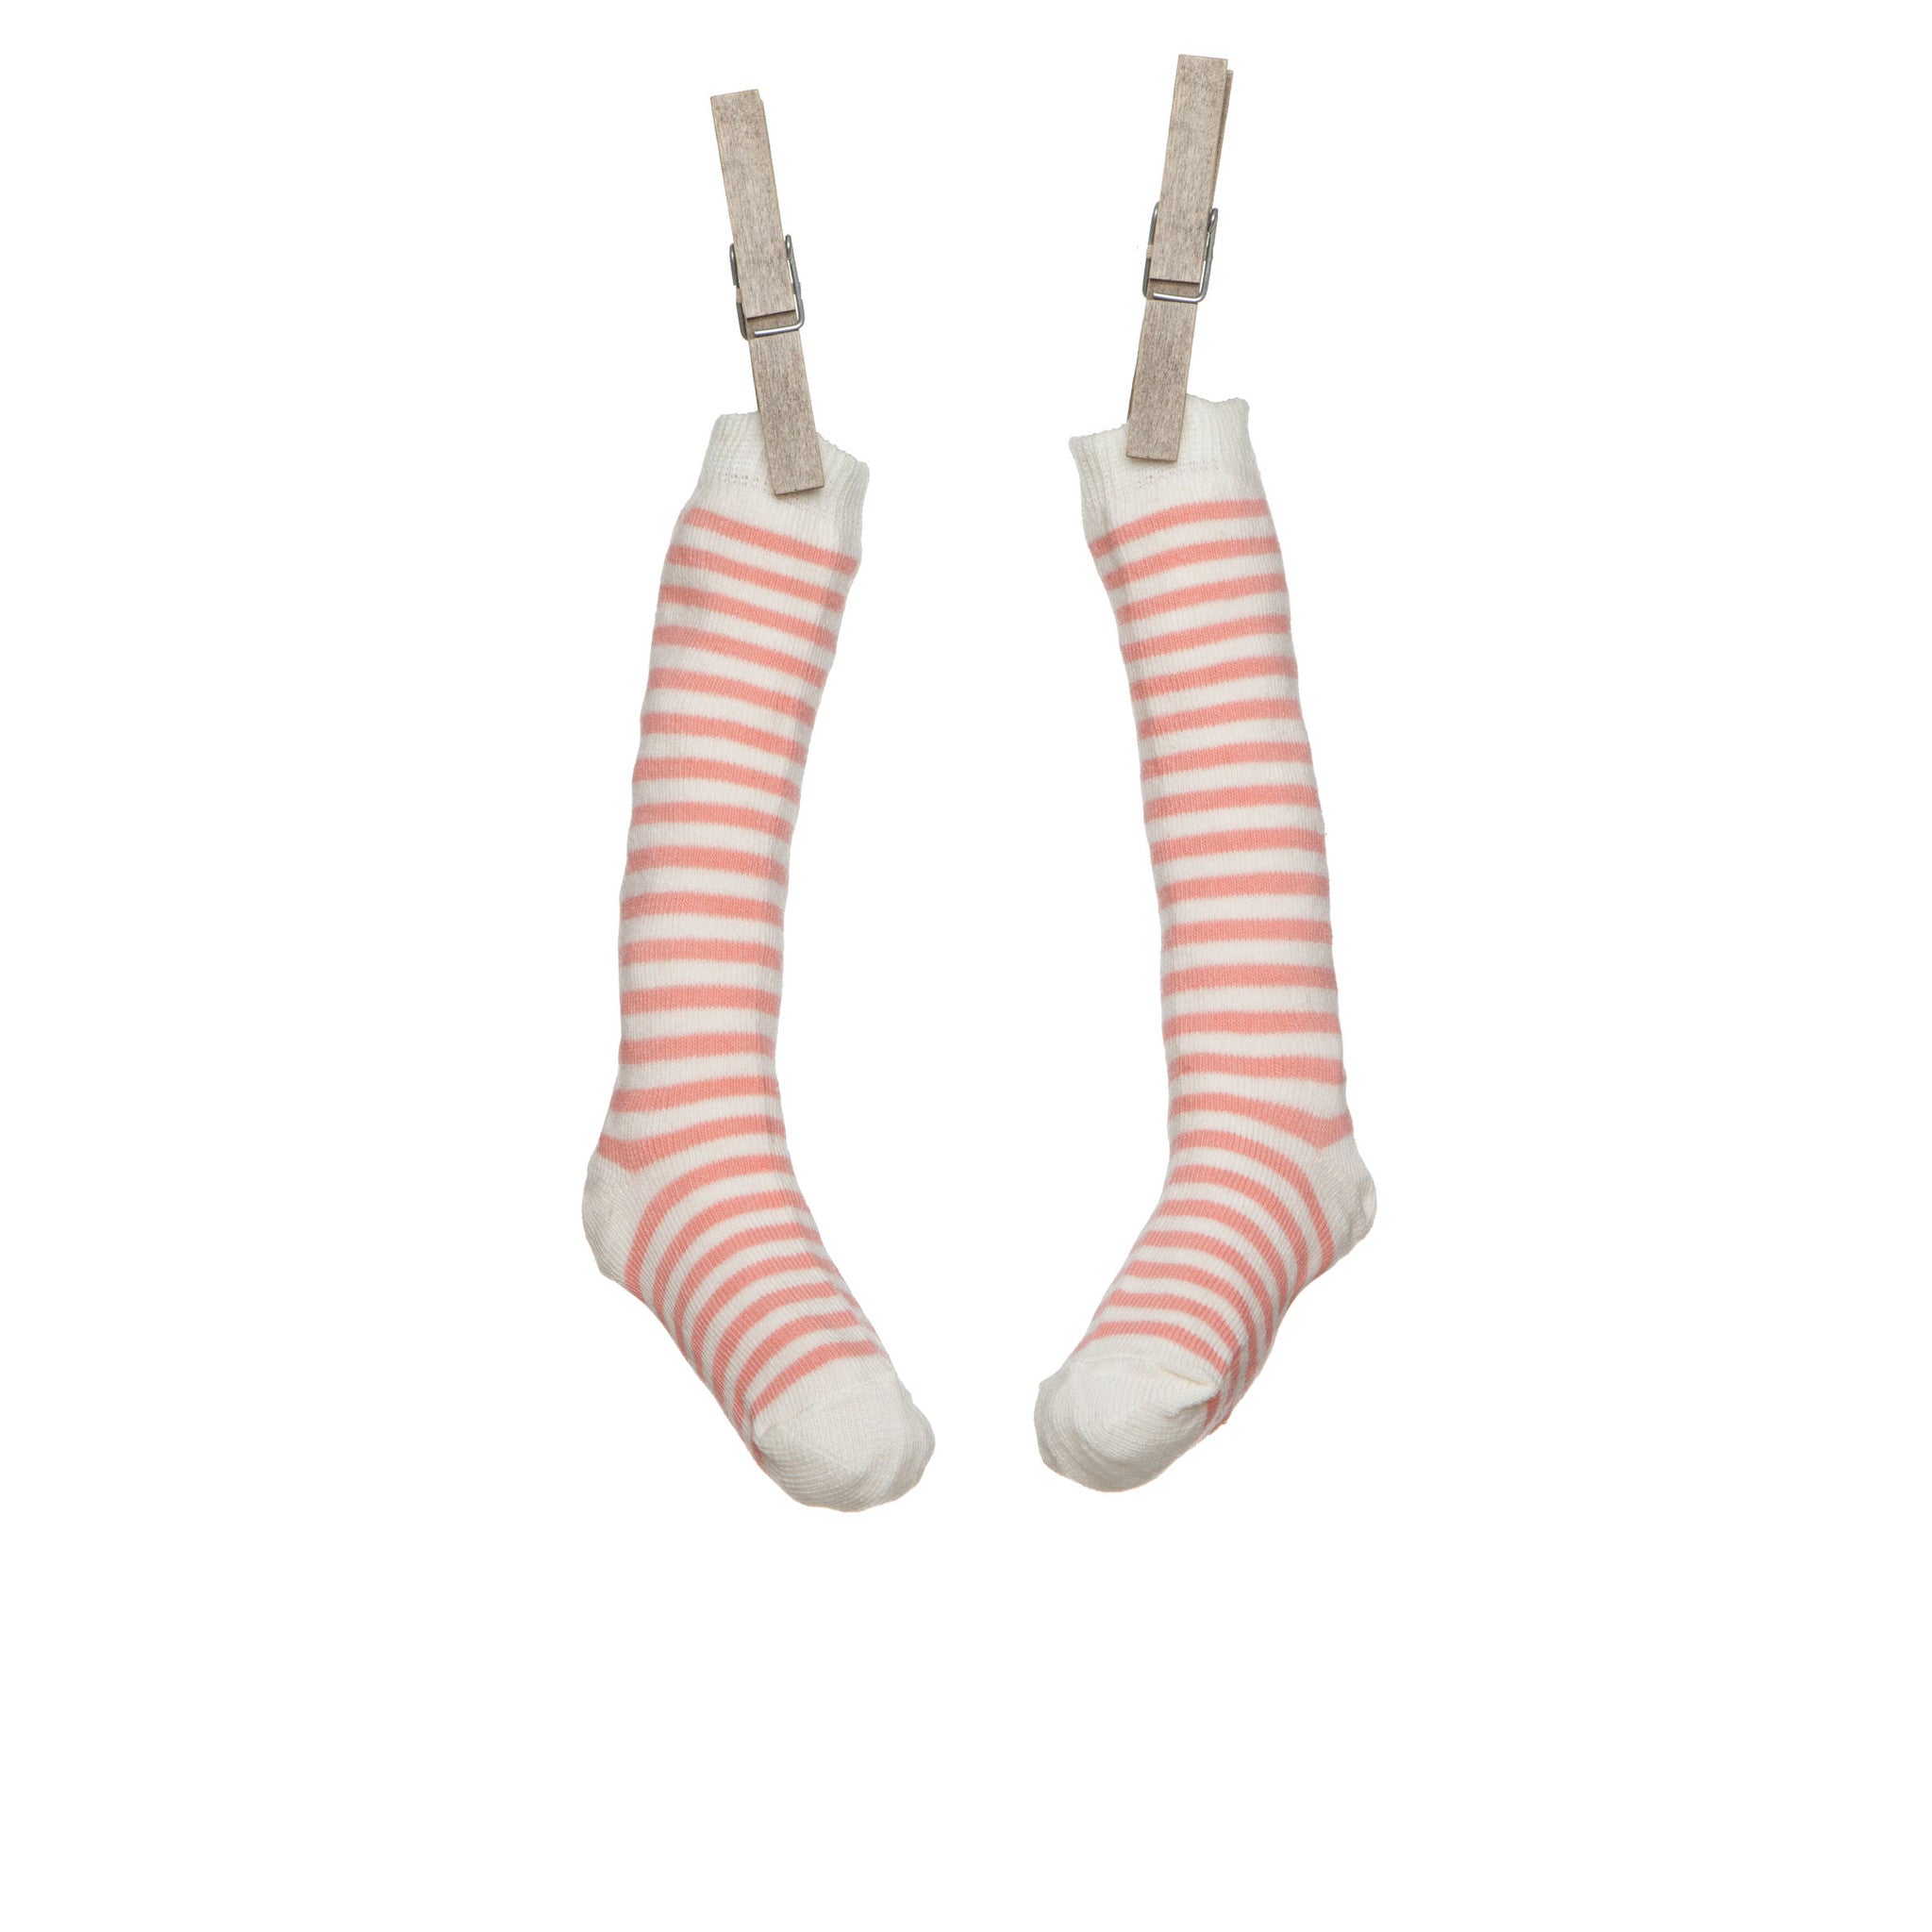 Children's Rose & White Striped Knee-Length Socks